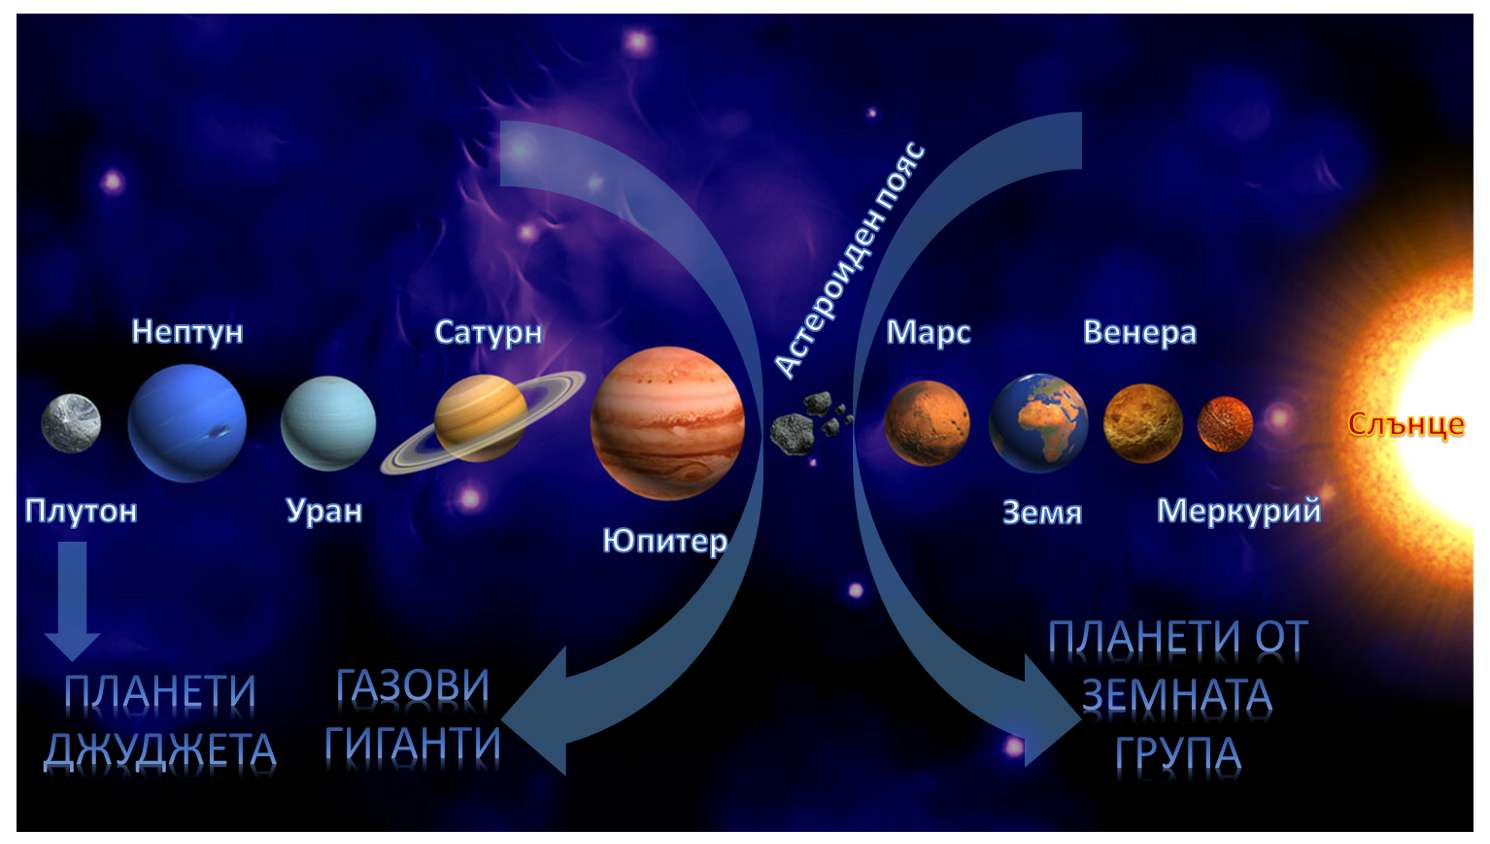 太陽系 3 写真からオンラインパズル